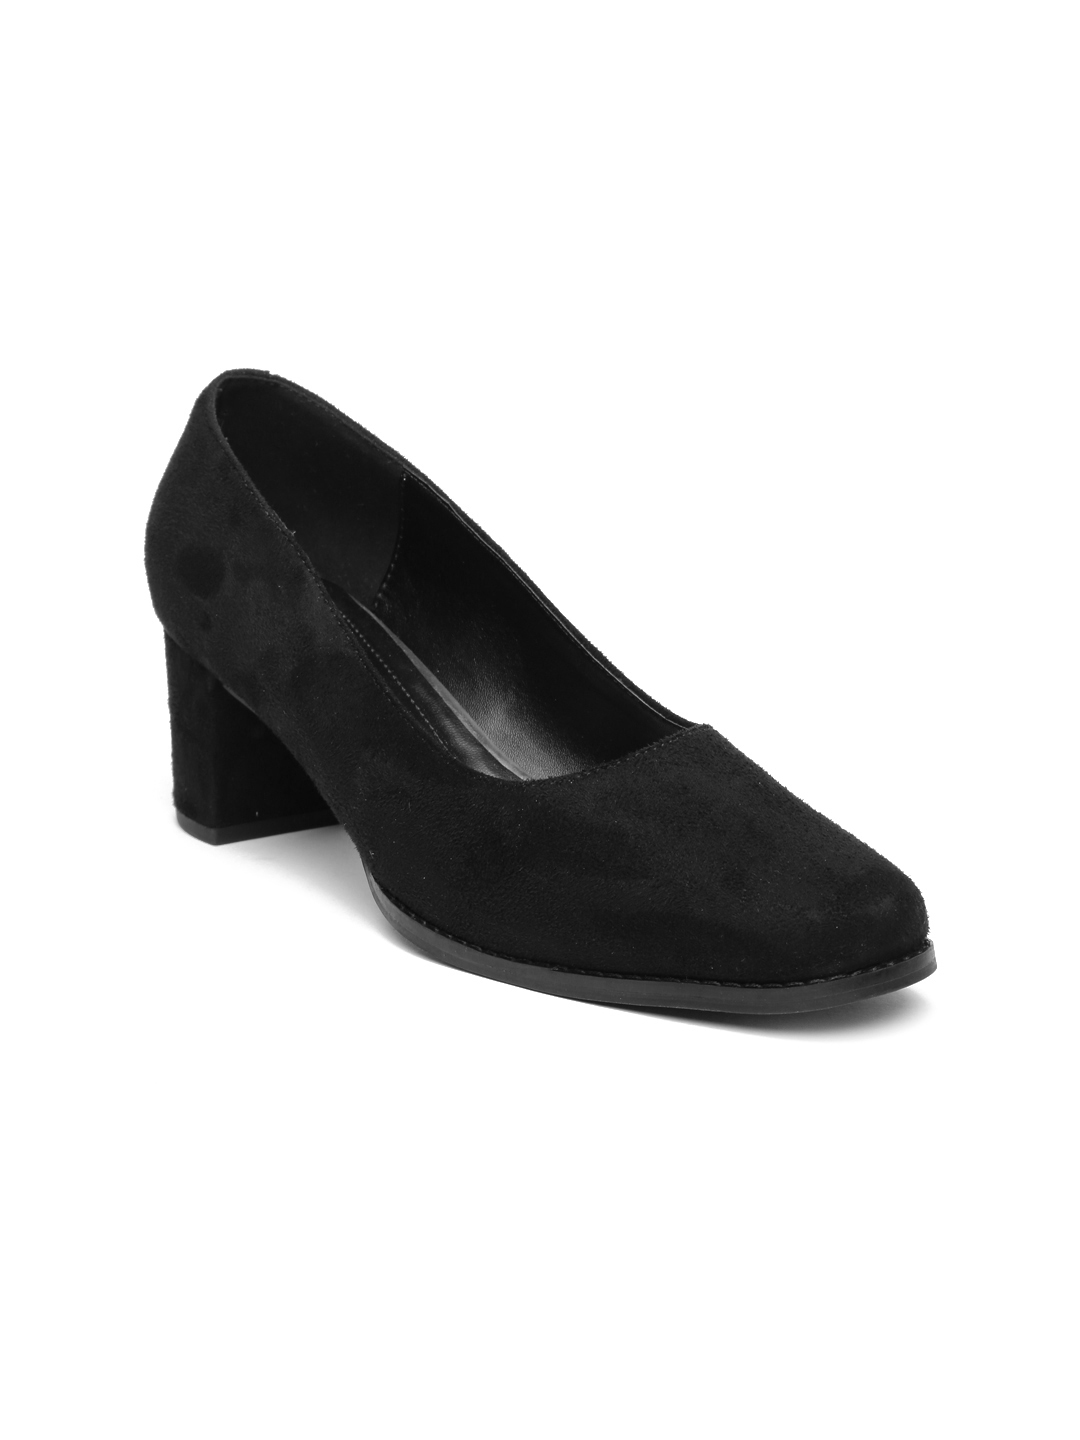 Buy Inc 5 Women Black Solid Suede Pumps - Heels for Women 1723763 | Myntra